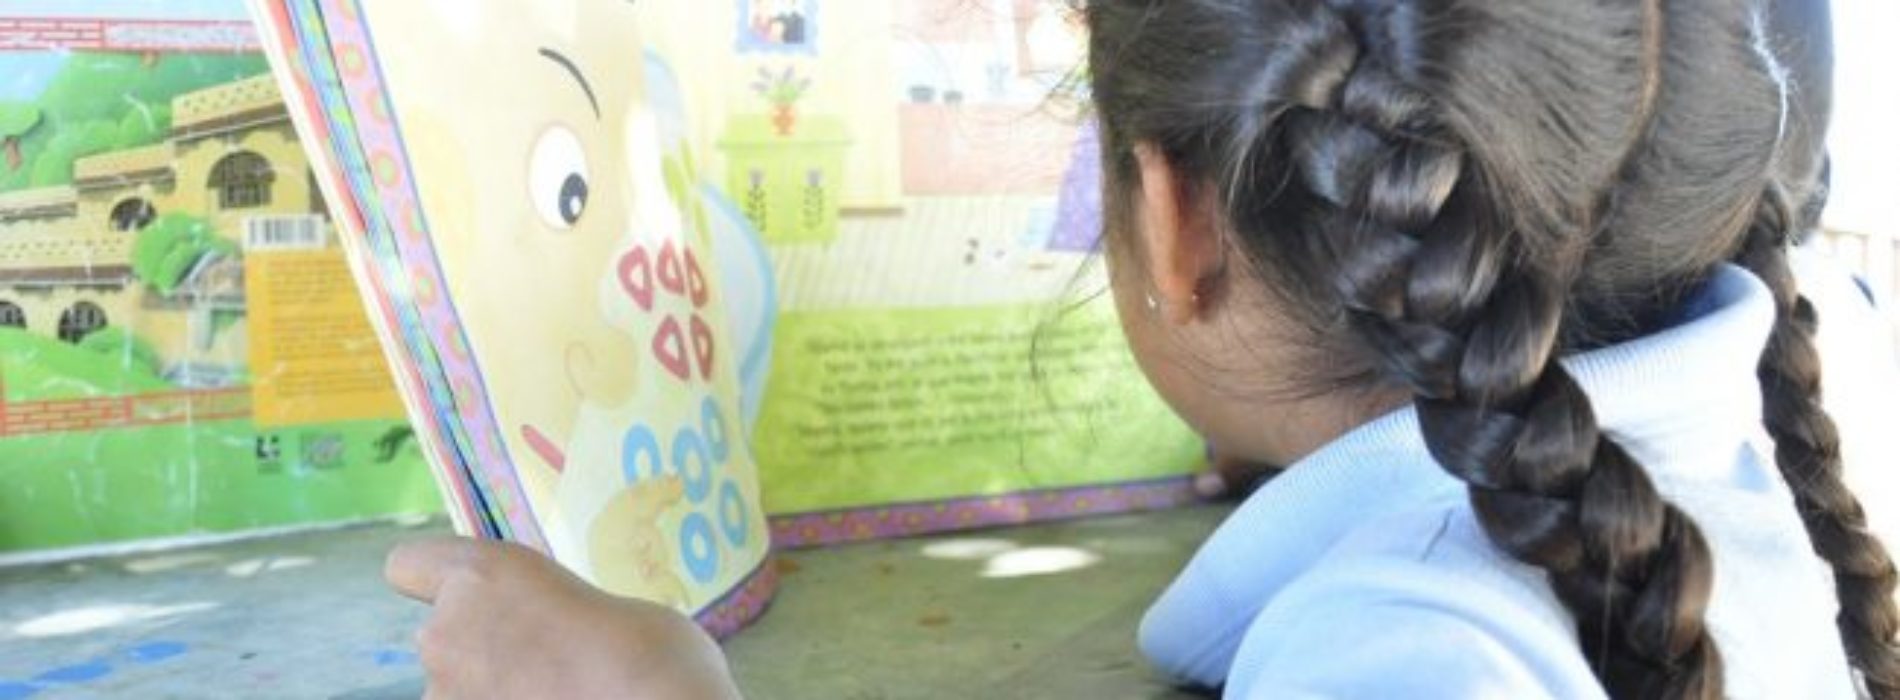 Se fomenta hábito de lectura desde el nivel preescolar:
IEEPO